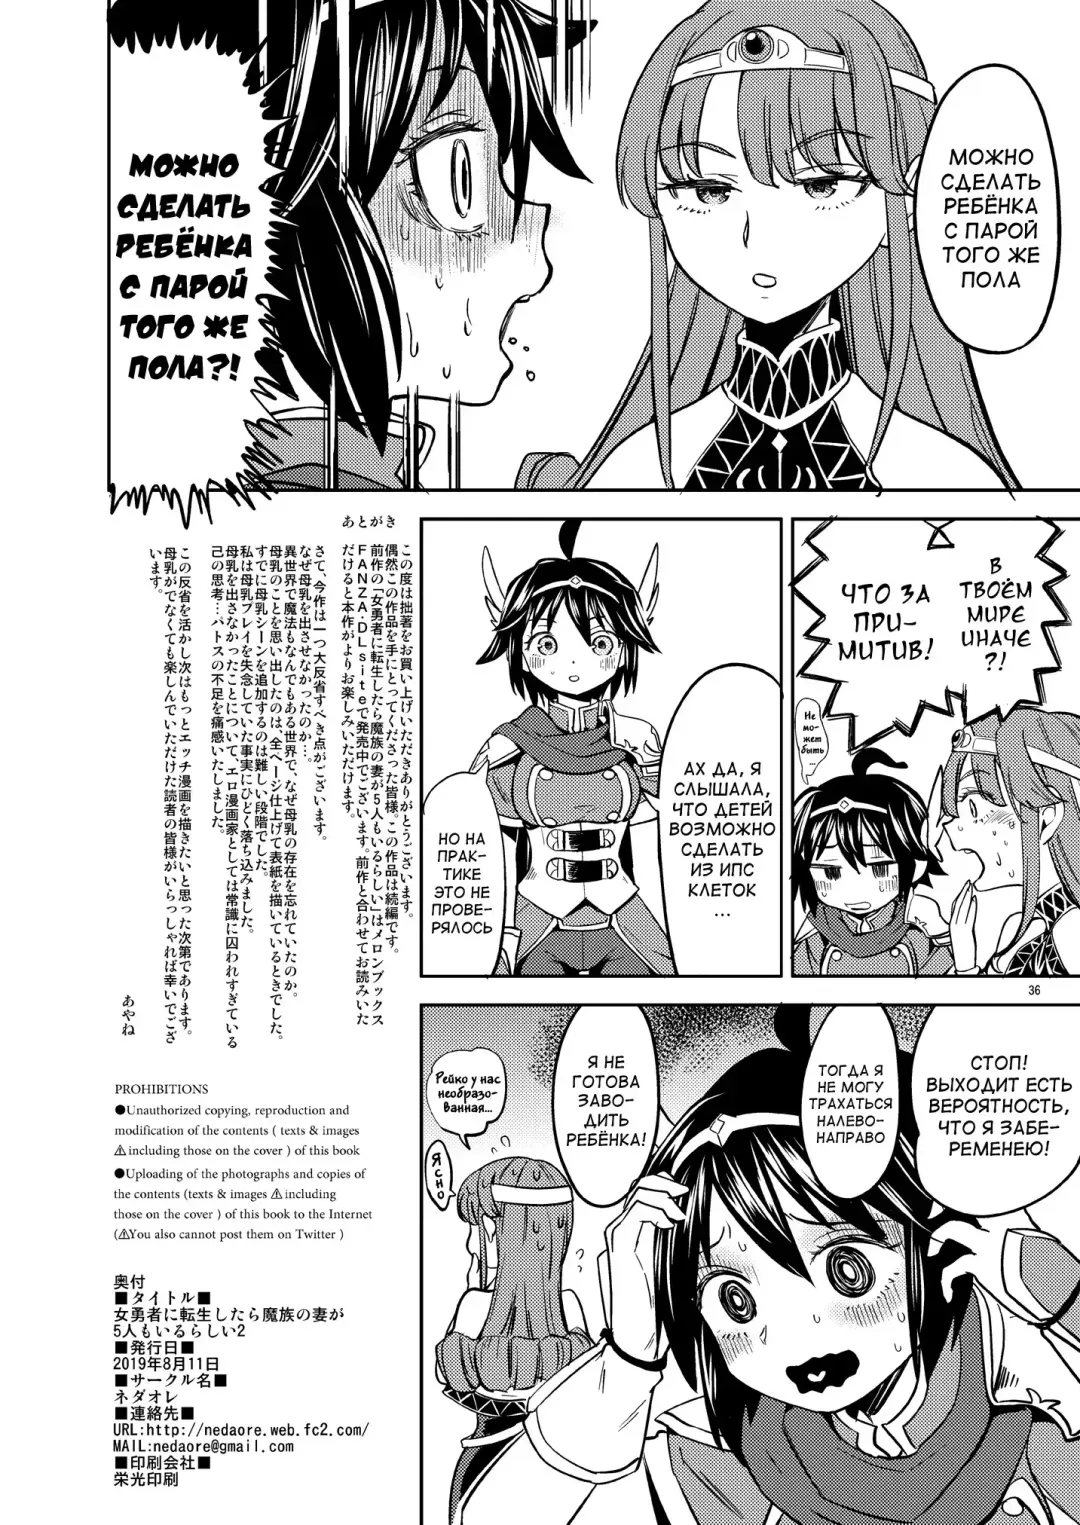 [Ayane] Onna Yuusha ni Tensei Shitara Mazoku no Tsuma ga 5-nin mo Irurashii 2 | Реинкарнация в героя, имеющую пять жён-демонов 2 Fhentai.net - Page 37